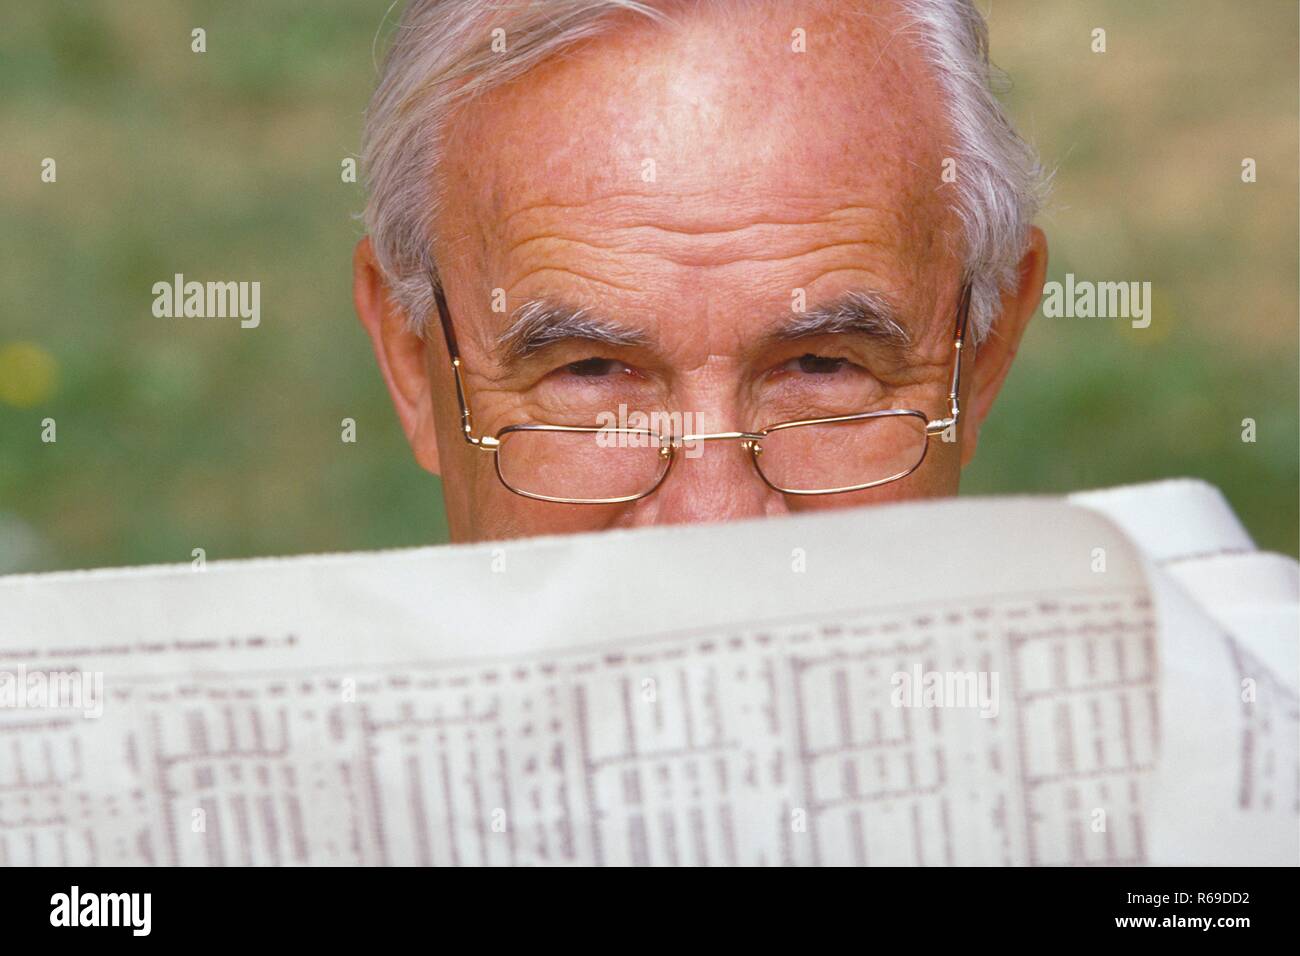 Ritratto, Nahaufnahme, grauhaariger Senior, ca. 70 Jahre alt, mit Lesebrille im Garten hinter circuizione Zeitung Foto Stock